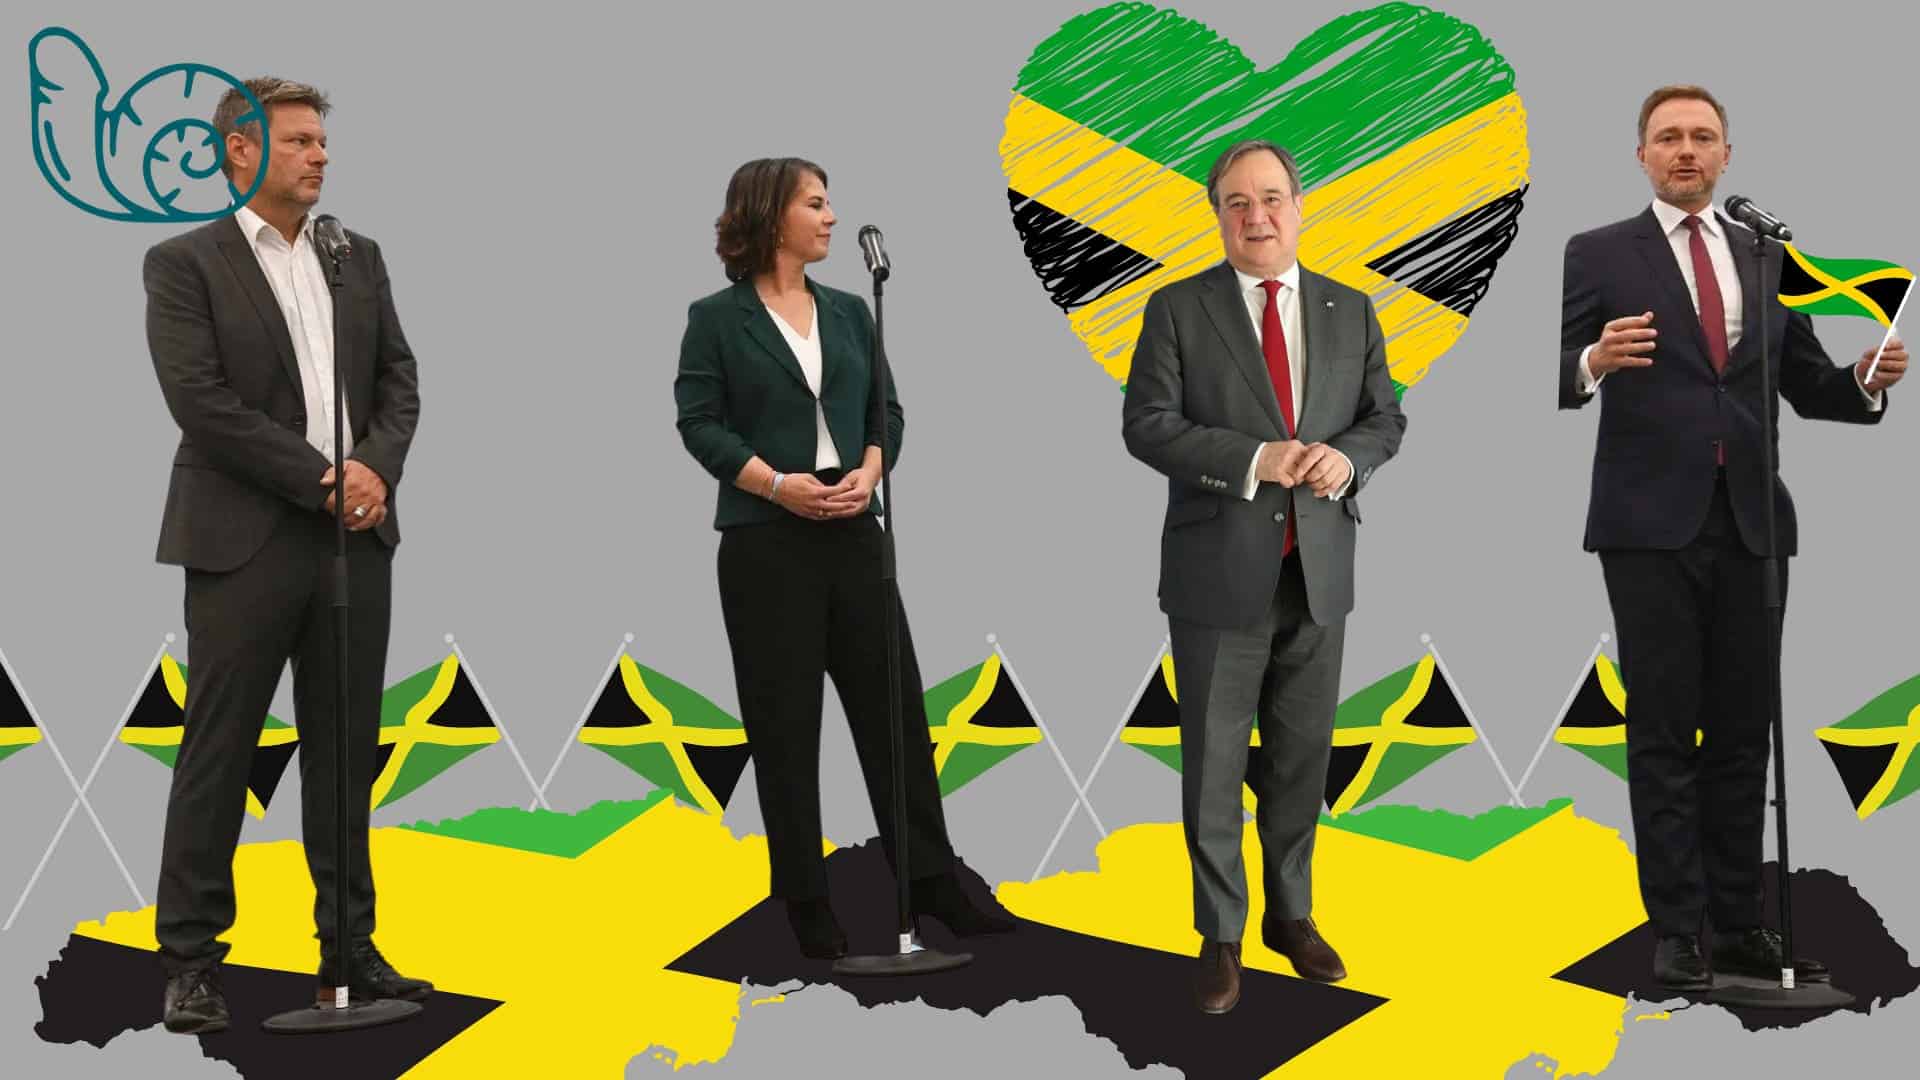 Bild für den Beitrag: Laschet stellt Sondierungspapier für Jamaika-Koalition vor